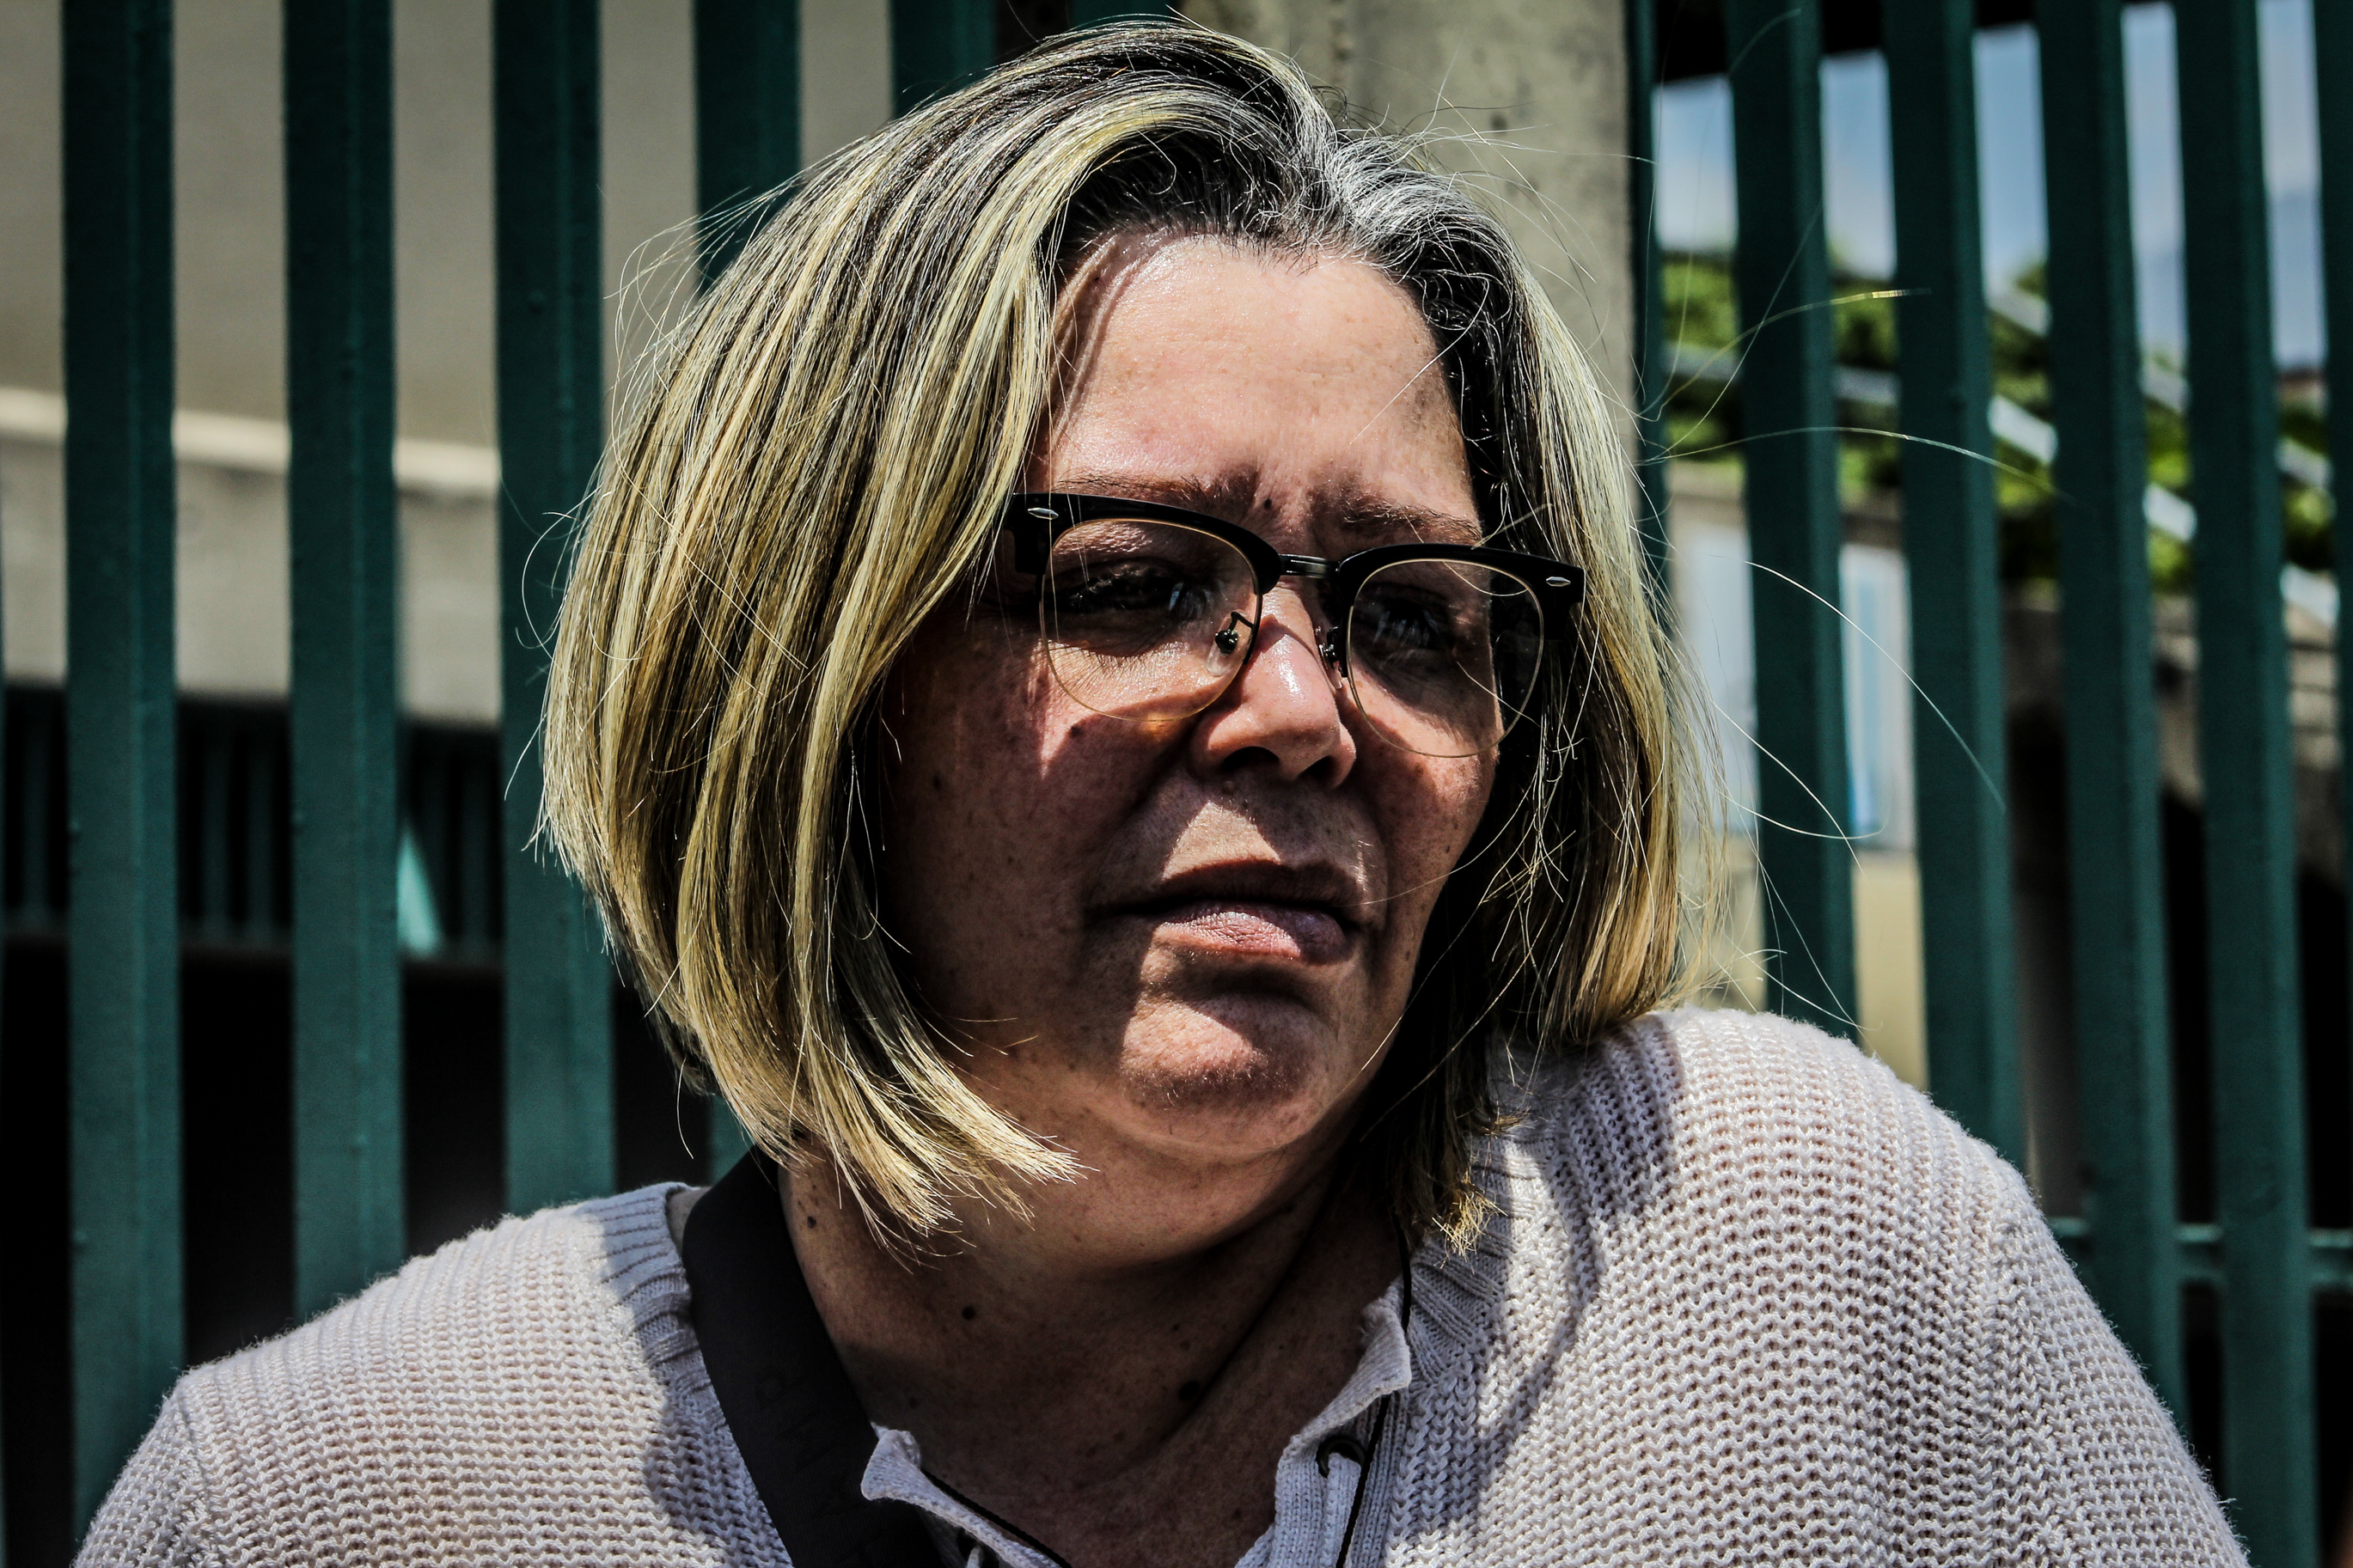 La juez Afiuni, presa de Chávez, condenada por corrupción espiritual